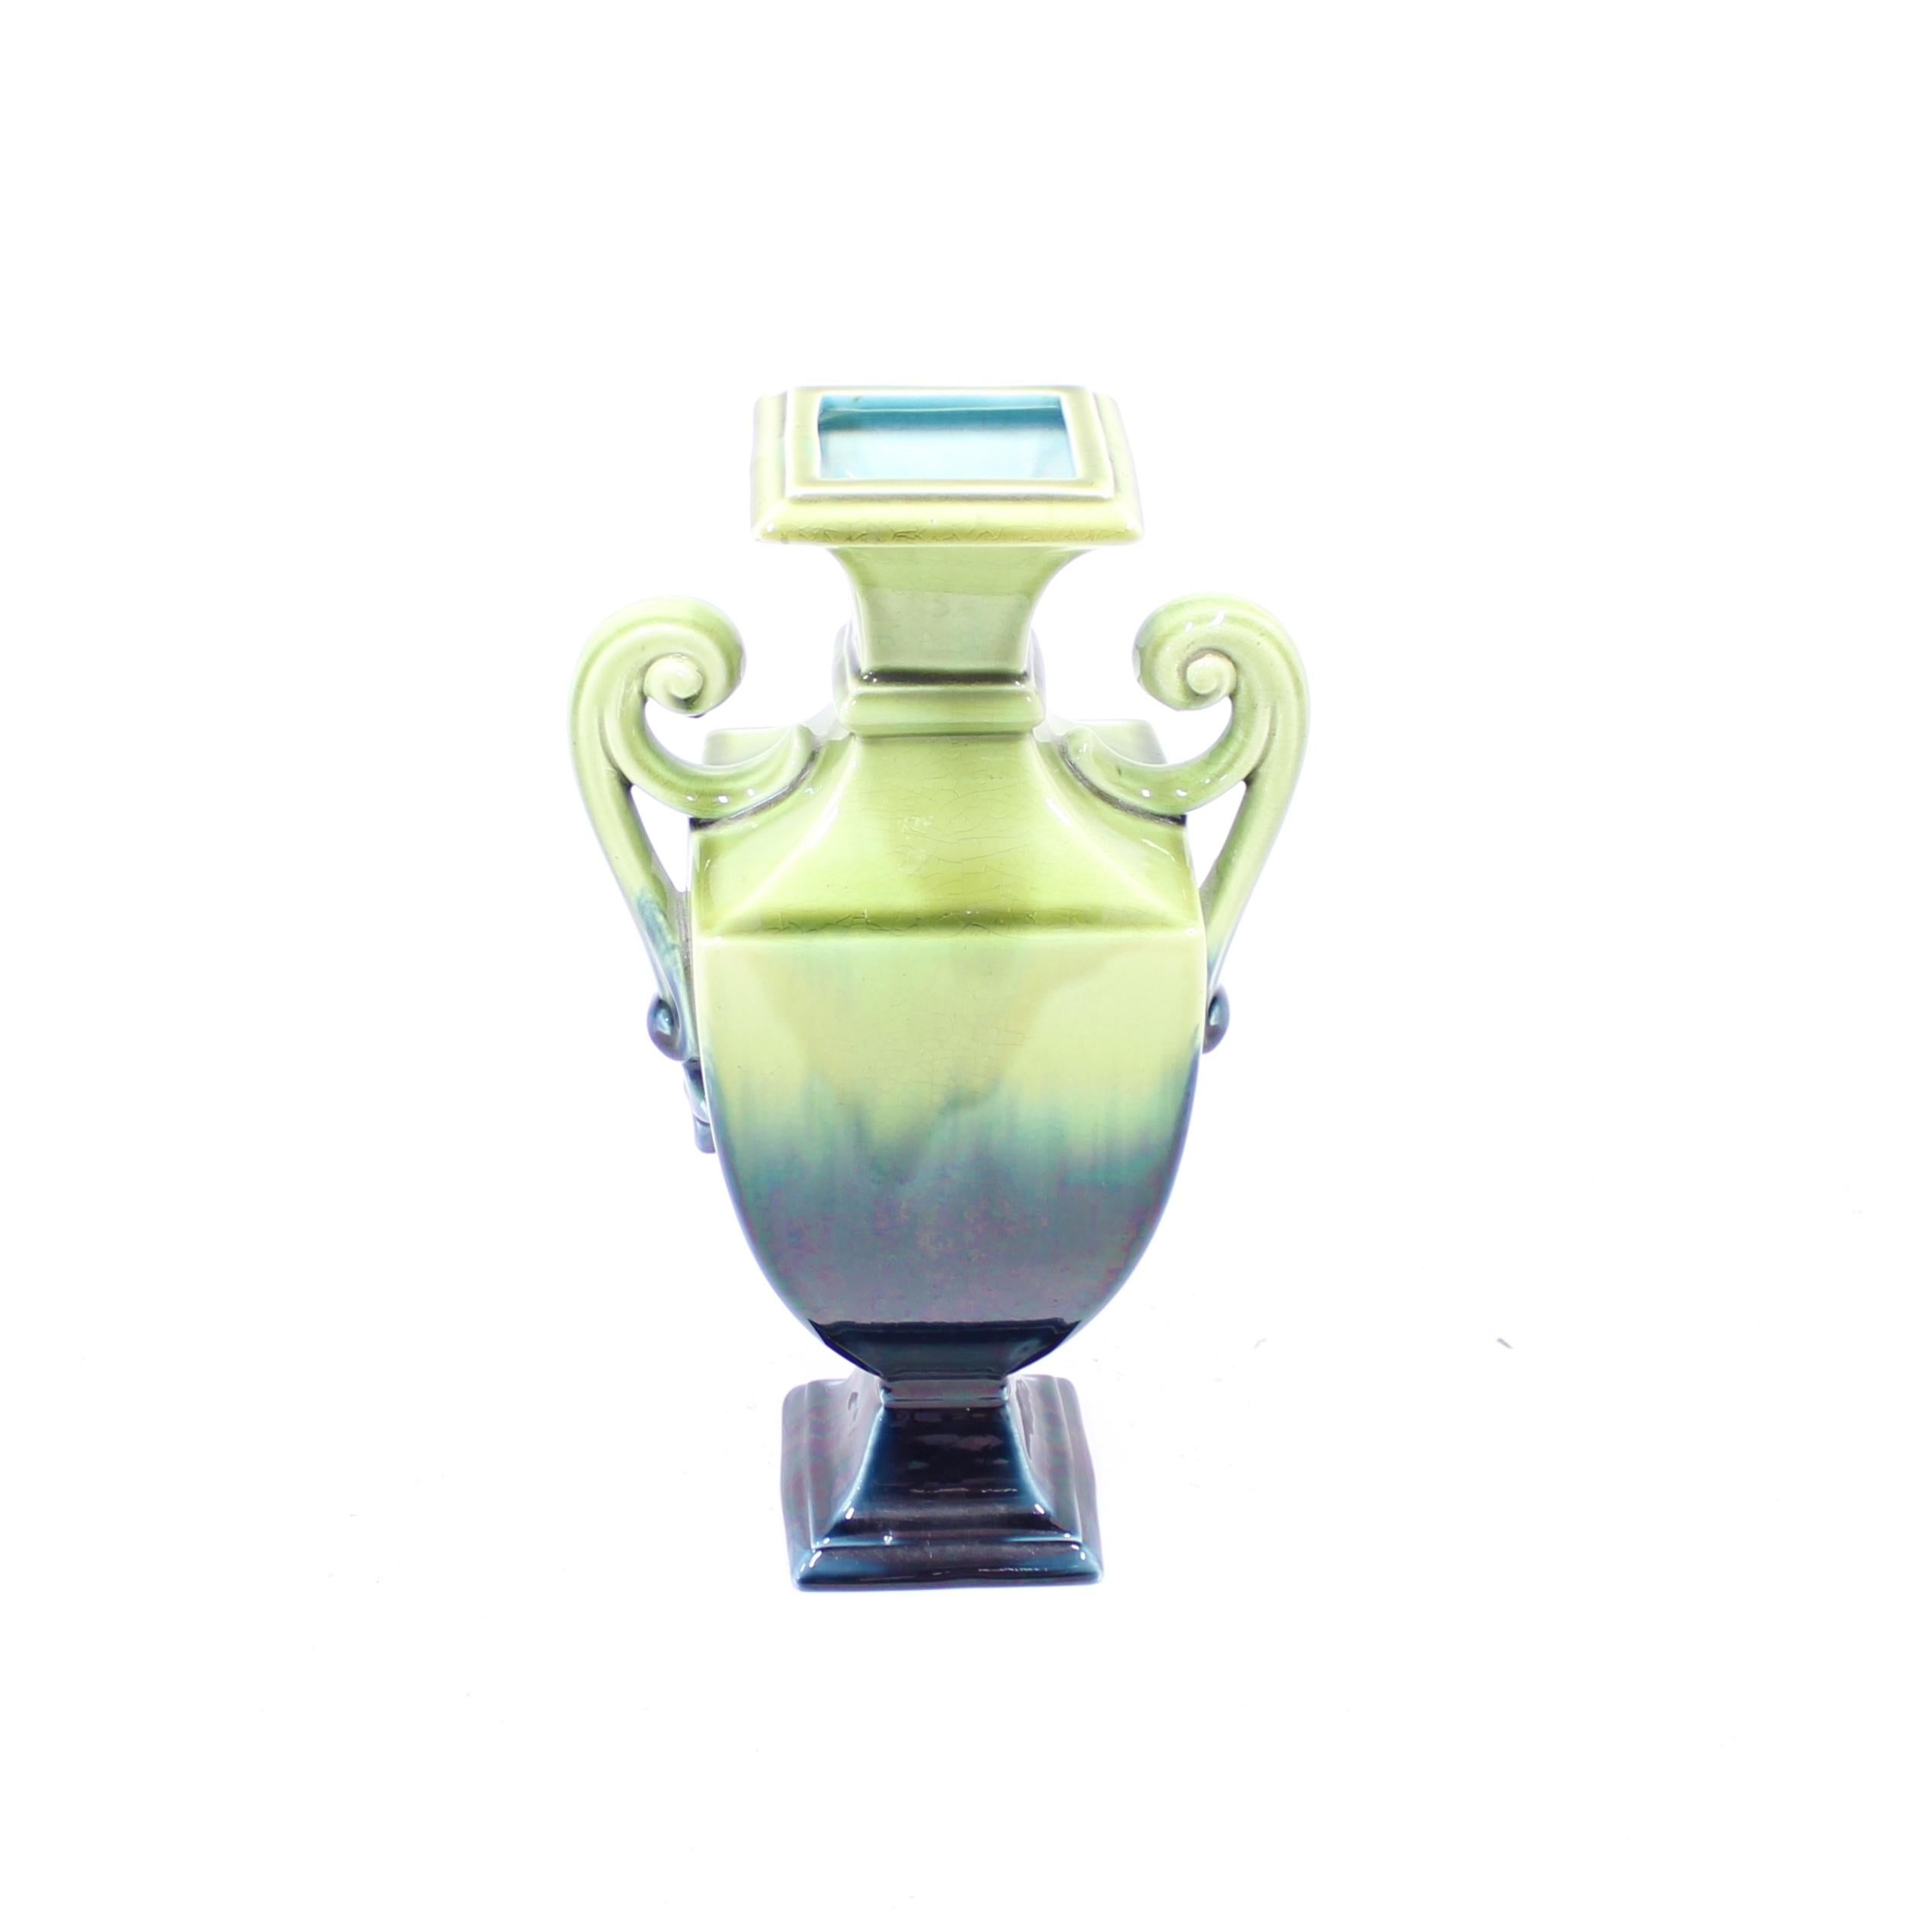 Große cremefarbene Vase/Urne des schwedischen Porzellanherstellers Rörstrand aus der ersten Hälfte des 20. Jahrhunderts. Sie hat eine grün/blaue Glasur, die von dunkel nach hell übergeht. Innen mit türkisfarbener Glasur. Sehr guter Zustand mit sehr